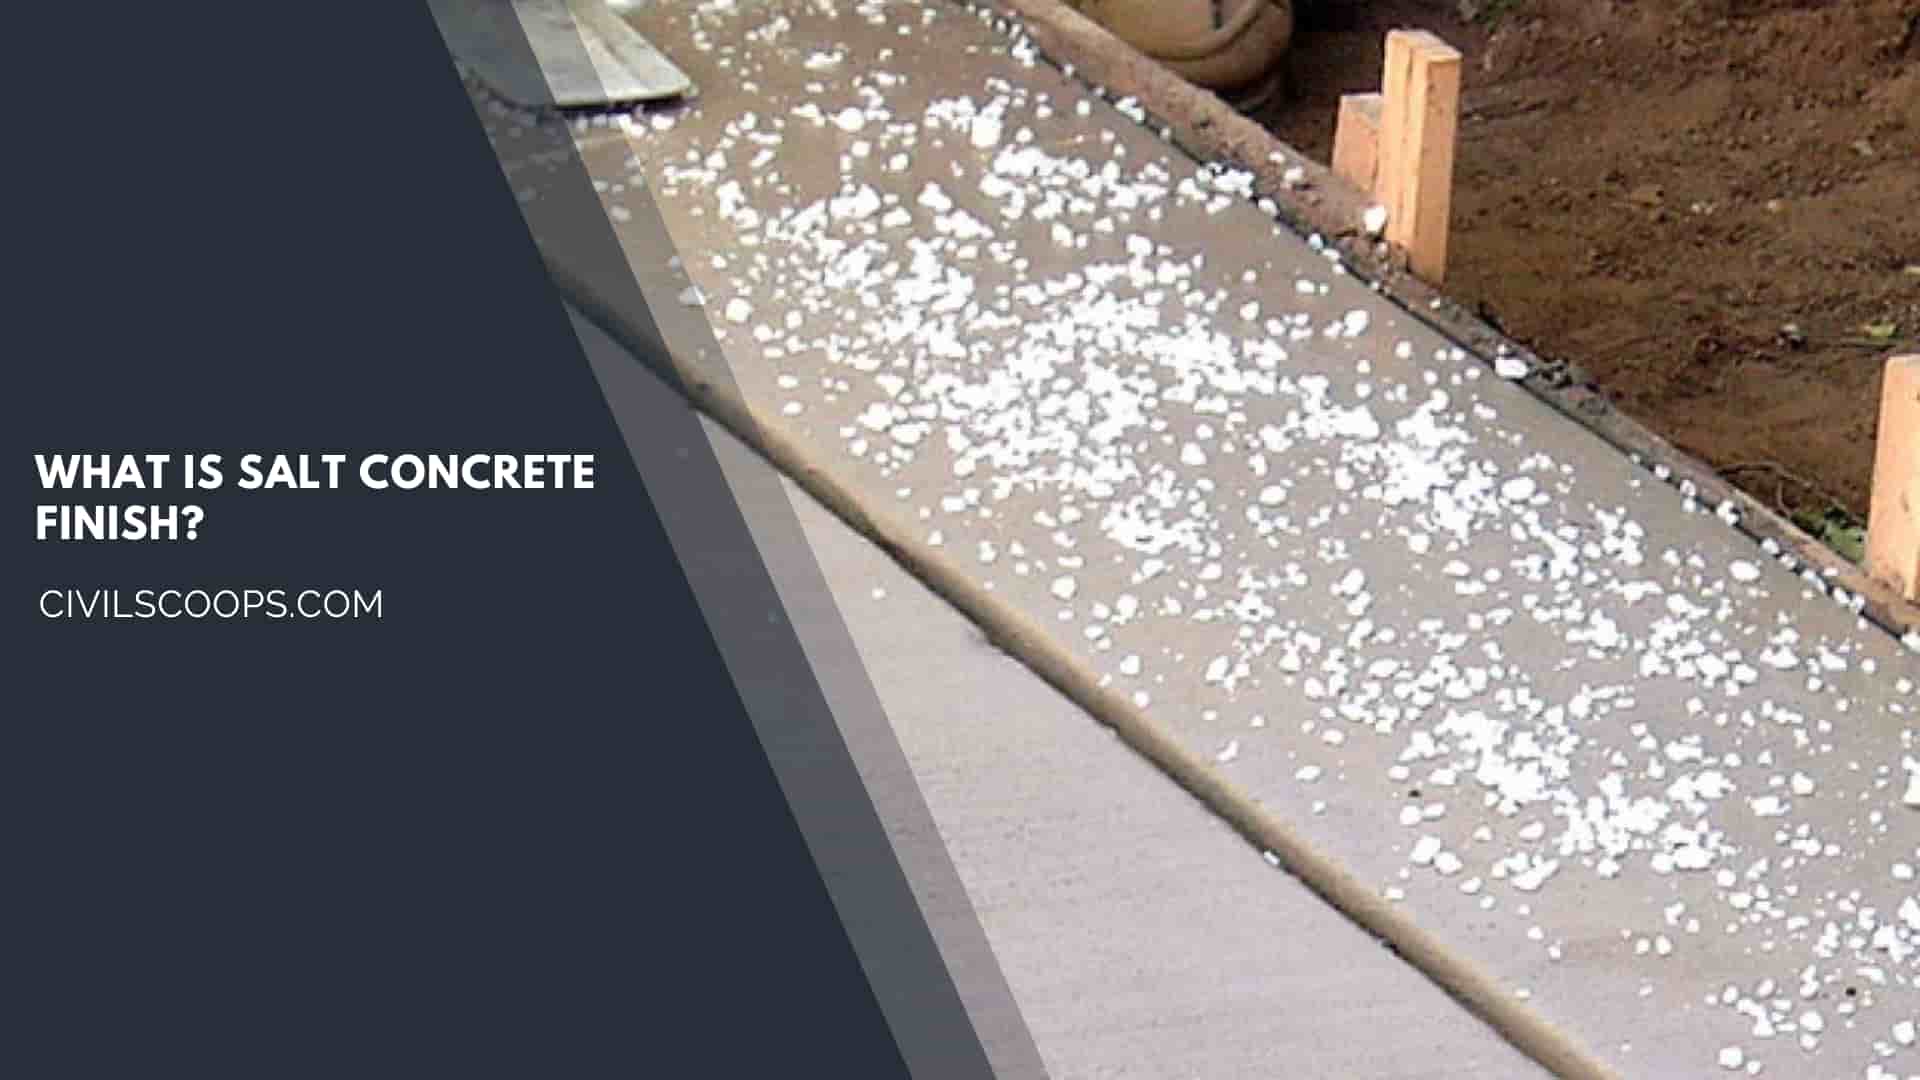 What is Salt Concrete Finish?